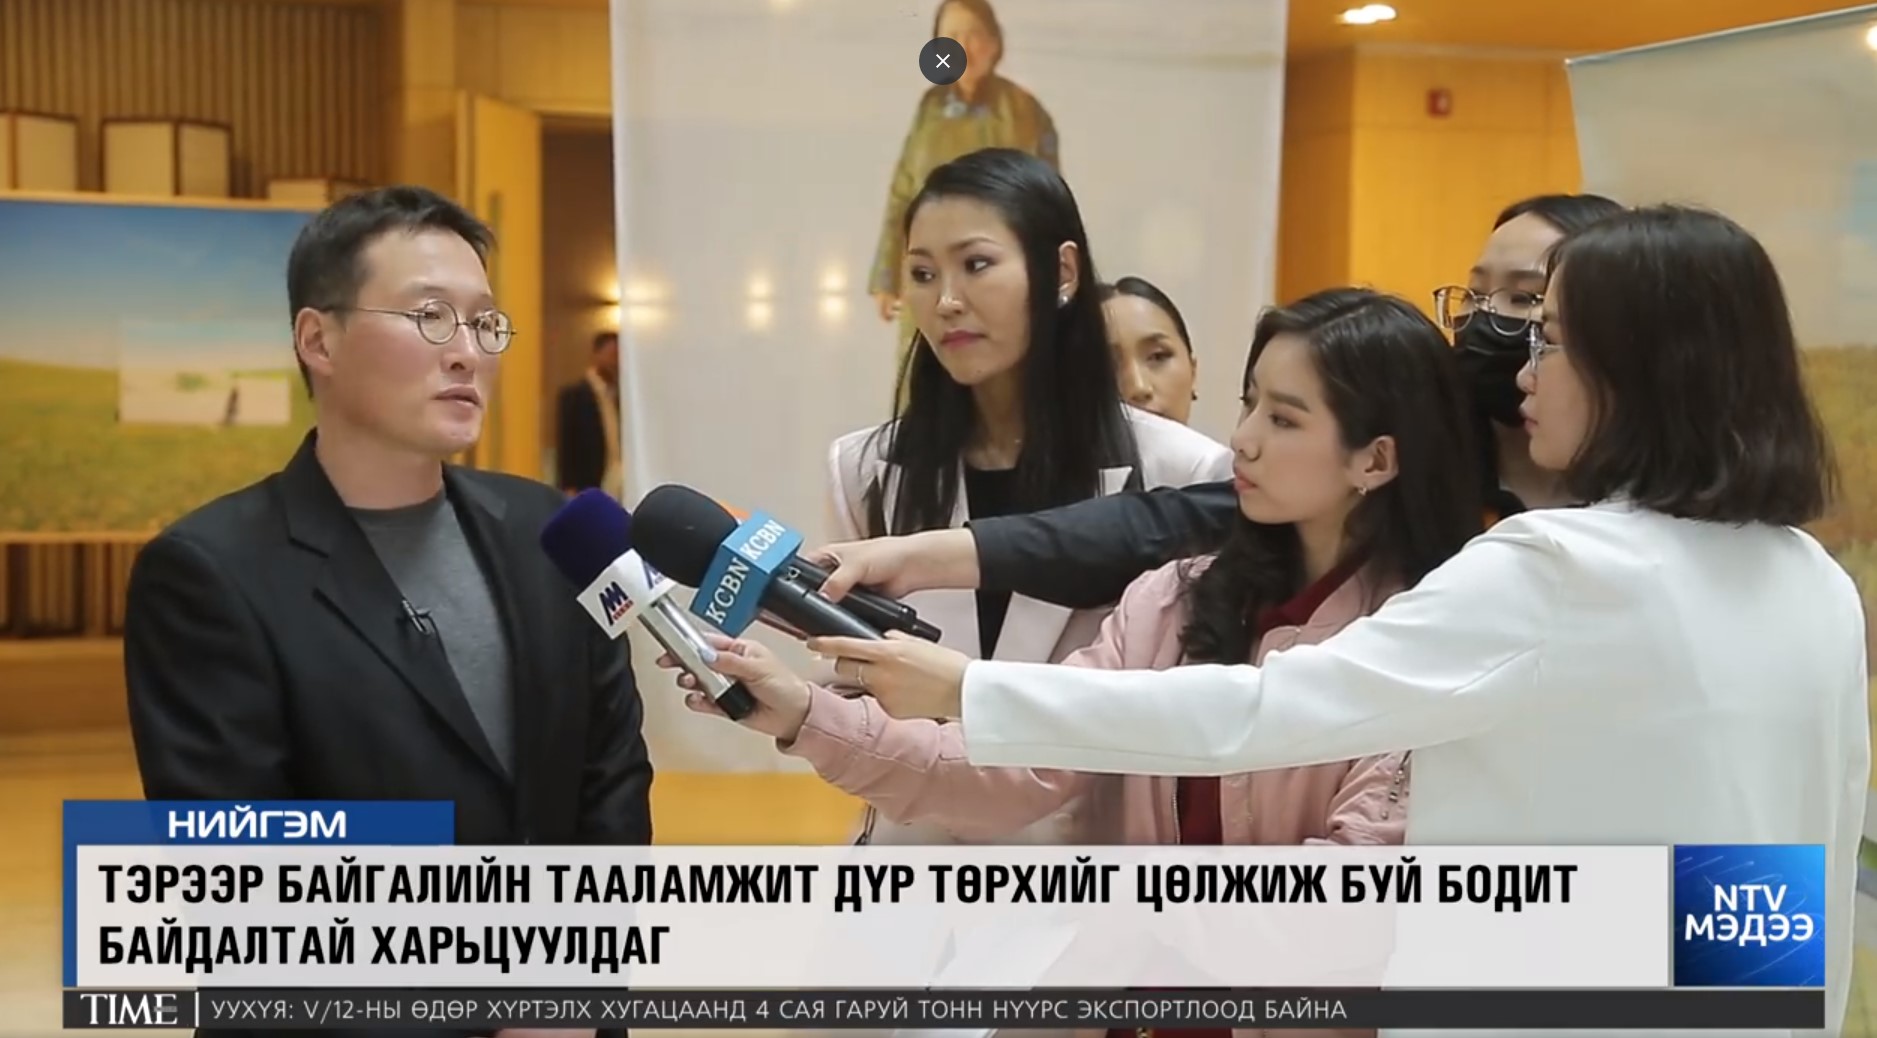 <이대성 사진작가가 전시회에 대해 몽골 기자들과 인터뷰하는 모습 - 출처 : 몽골 방송사 NTV>